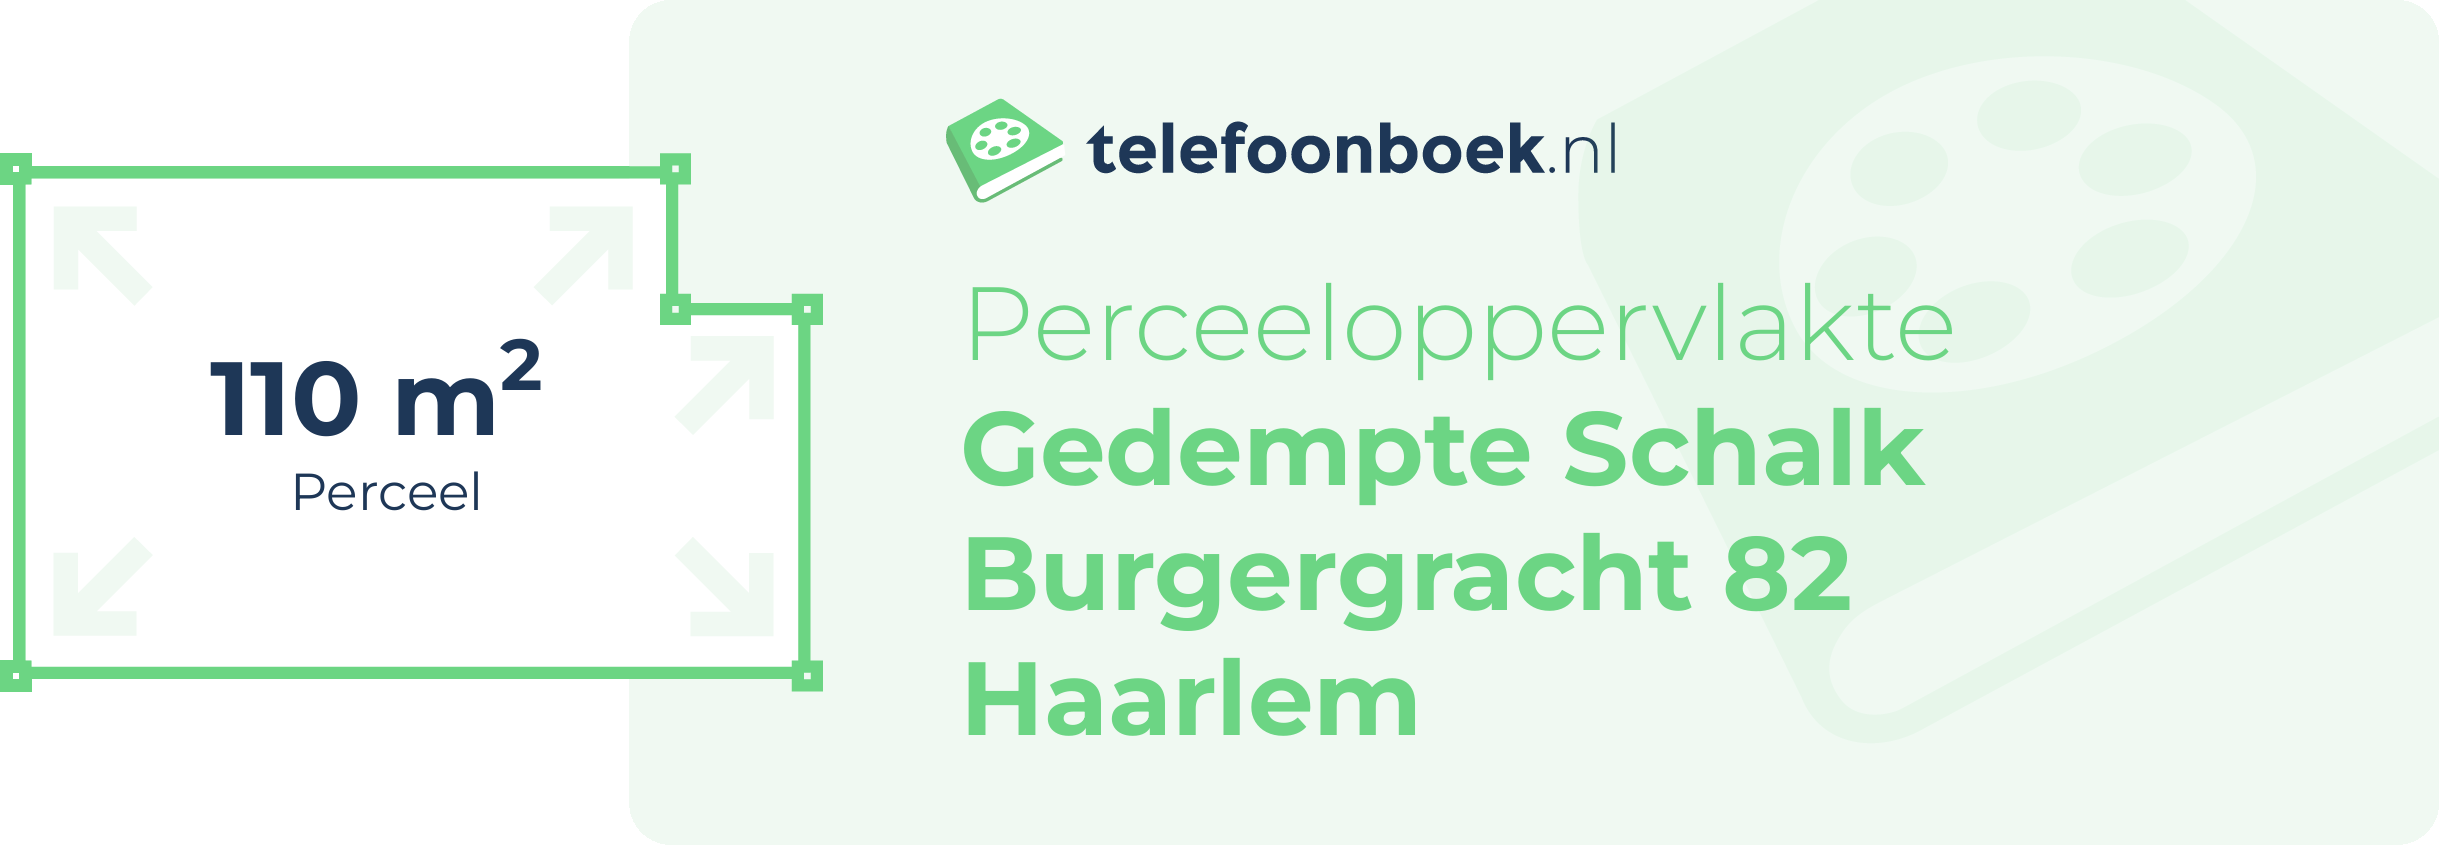 Perceeloppervlakte Gedempte Schalk Burgergracht 82 Haarlem